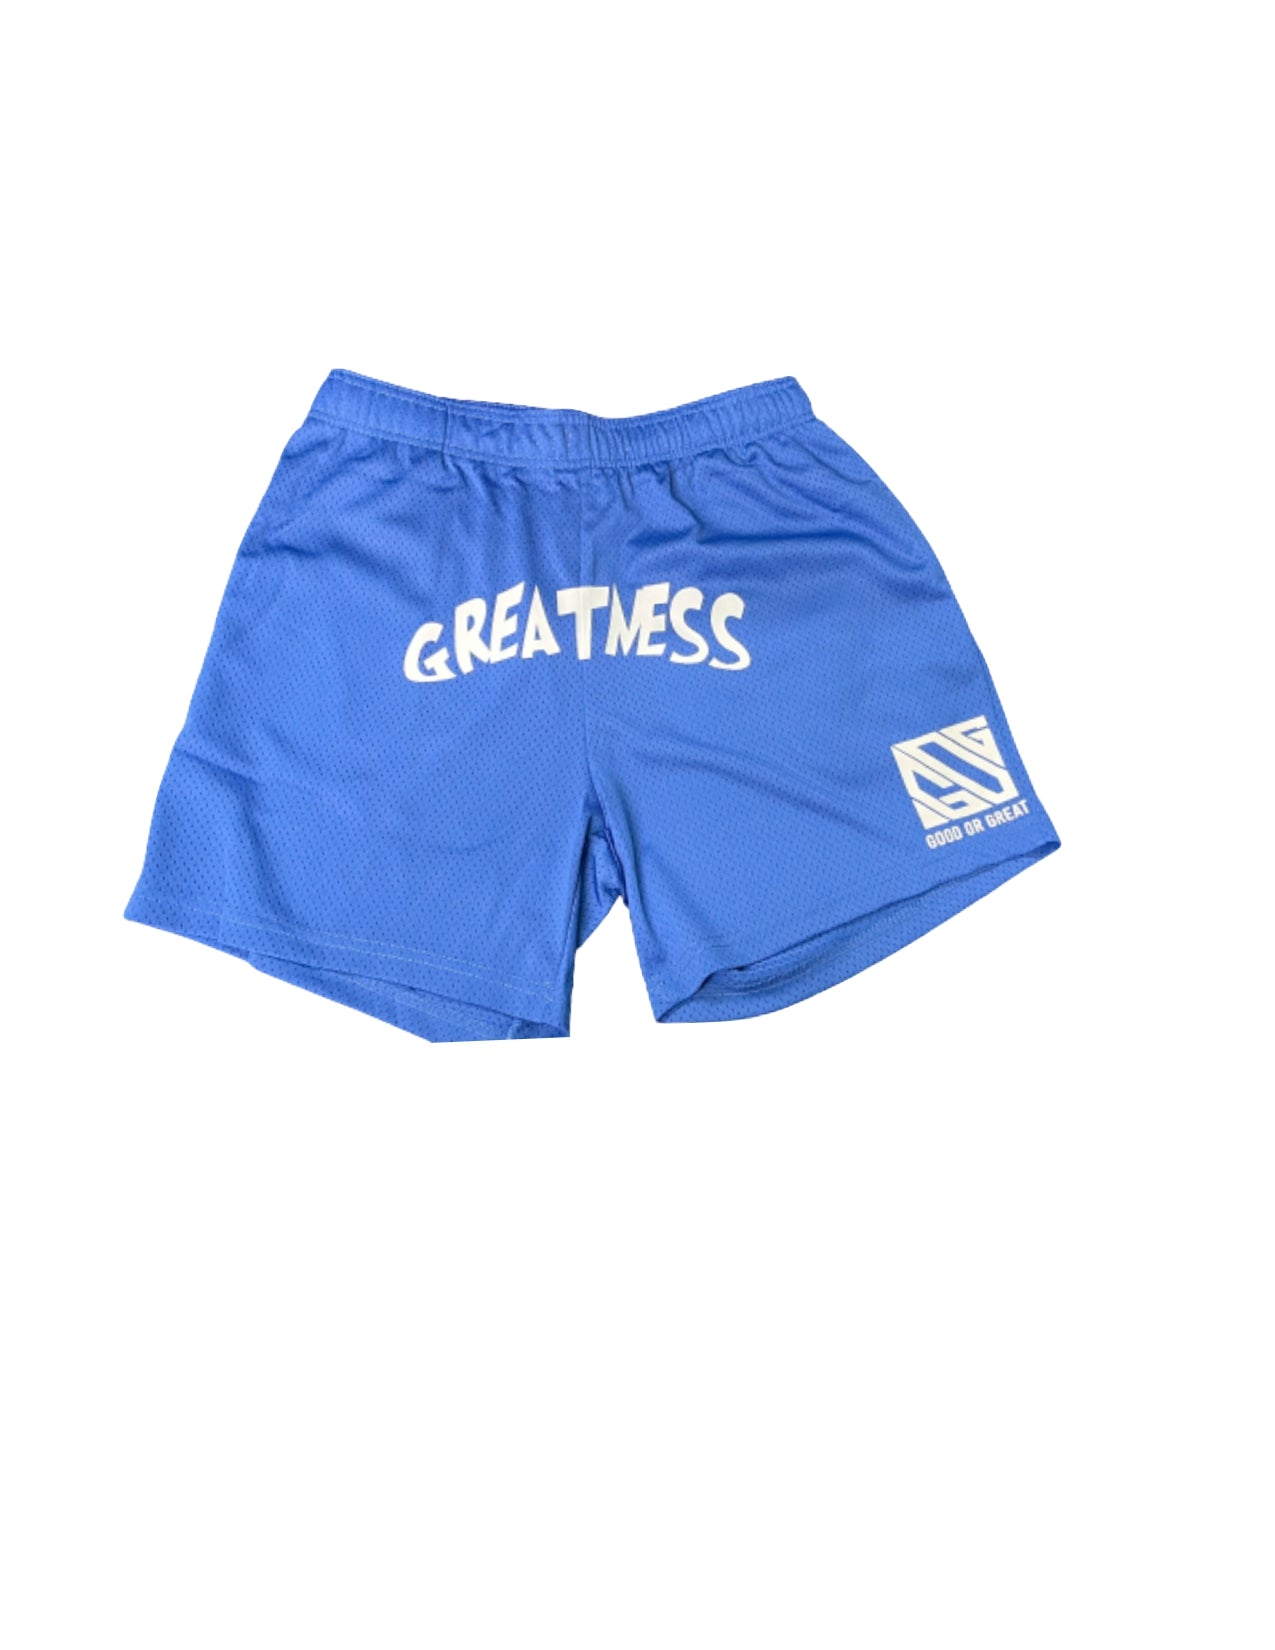 Greatness Mesh Shorts (Royal)